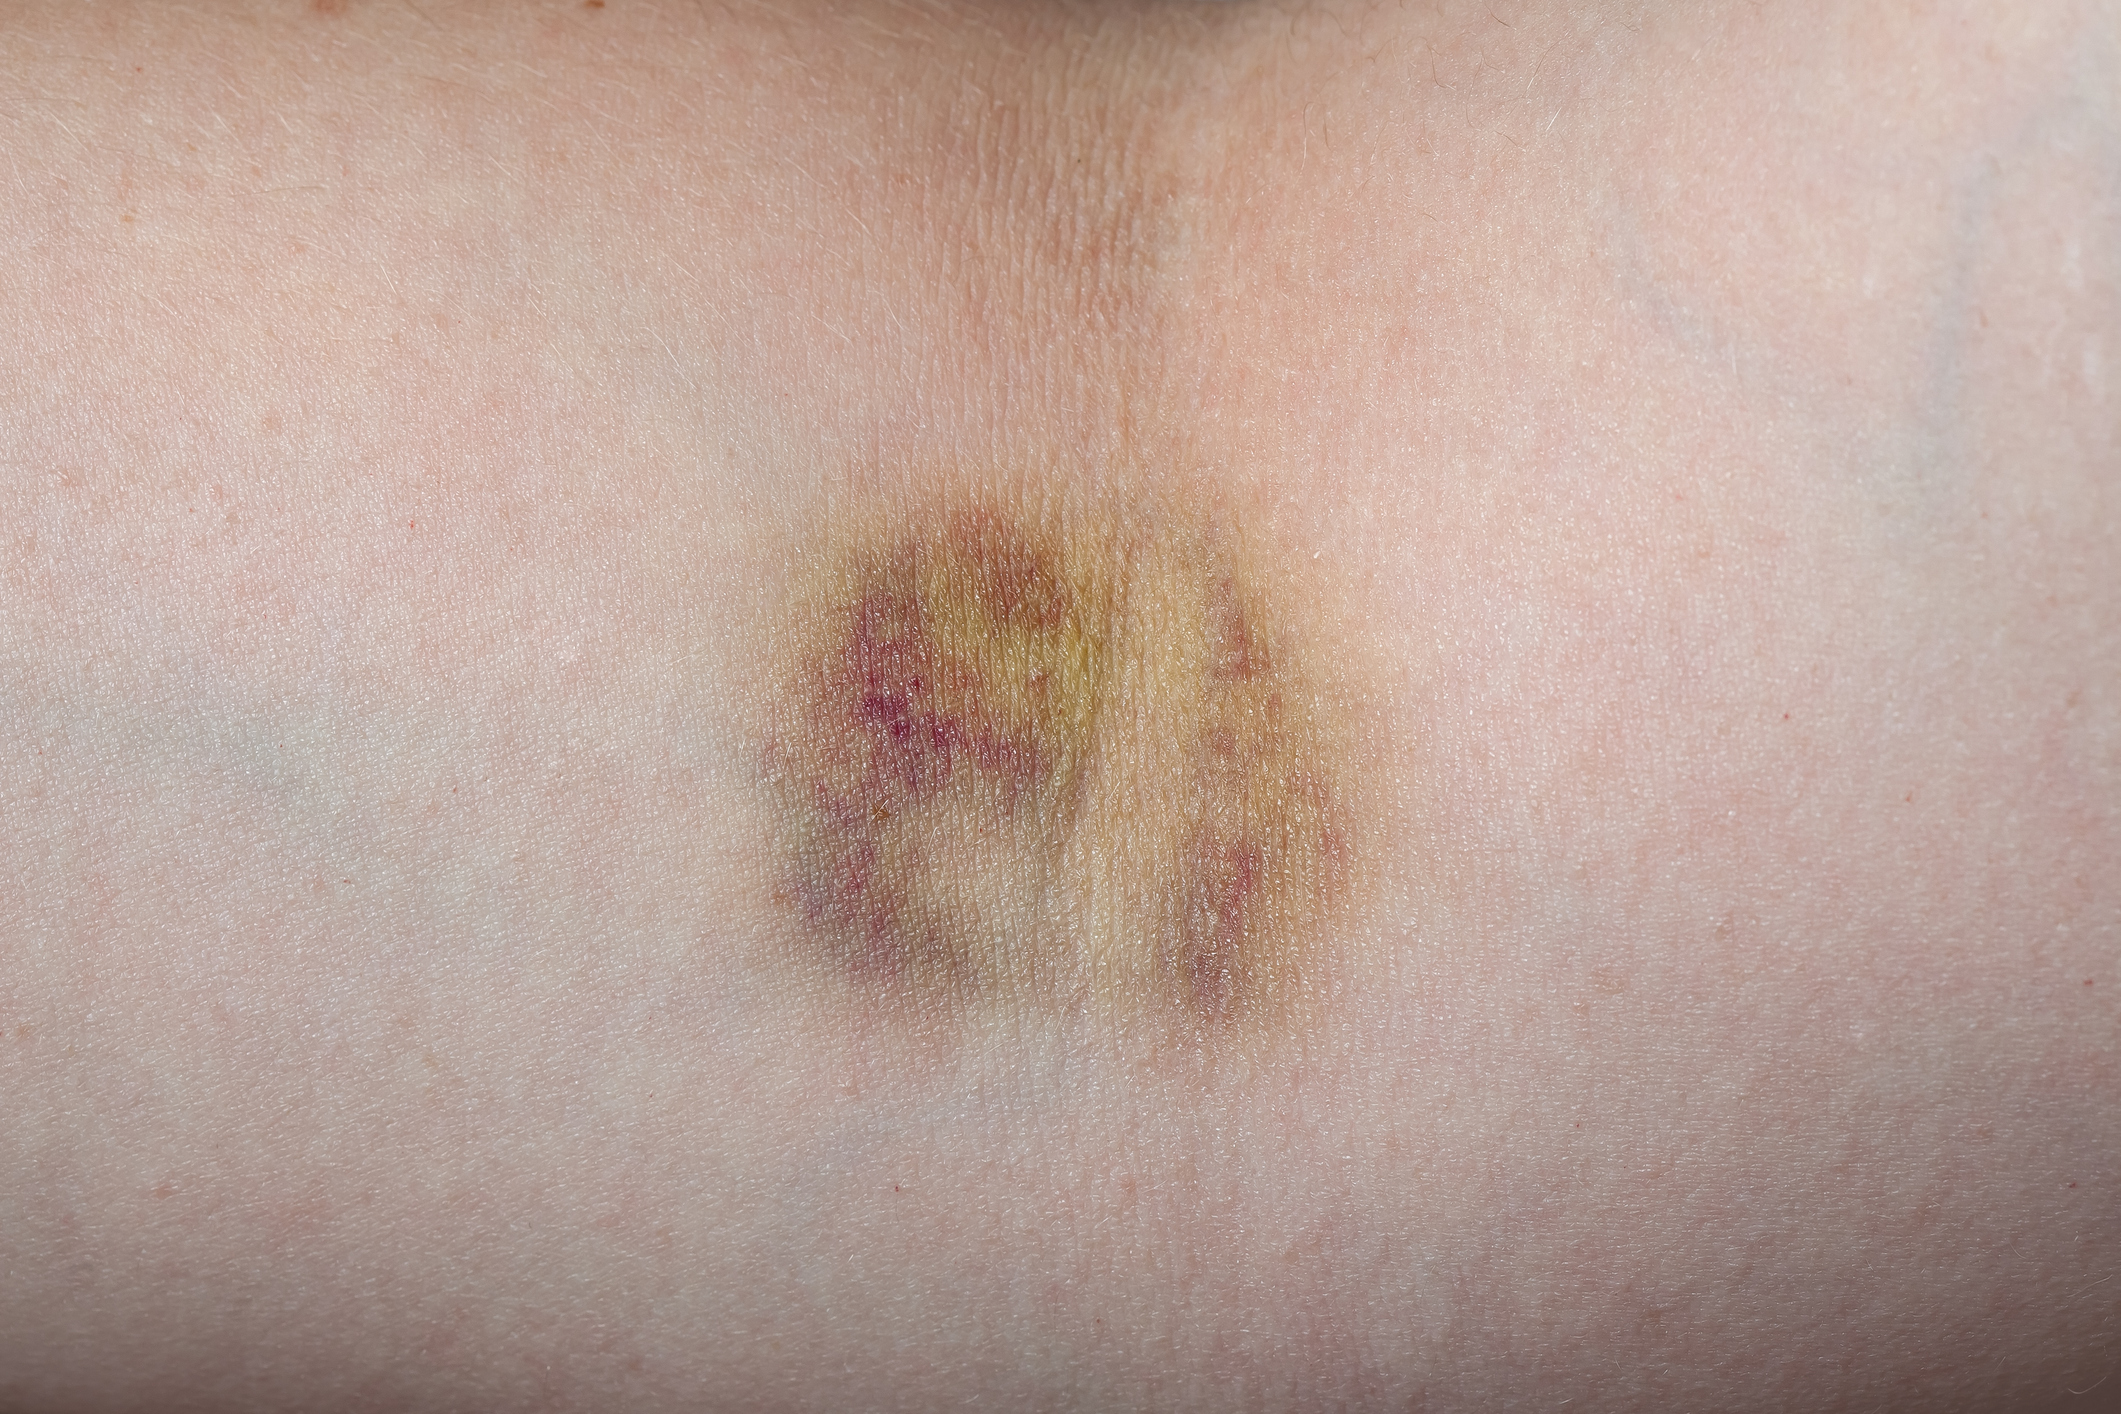 Haematoma (bruise)